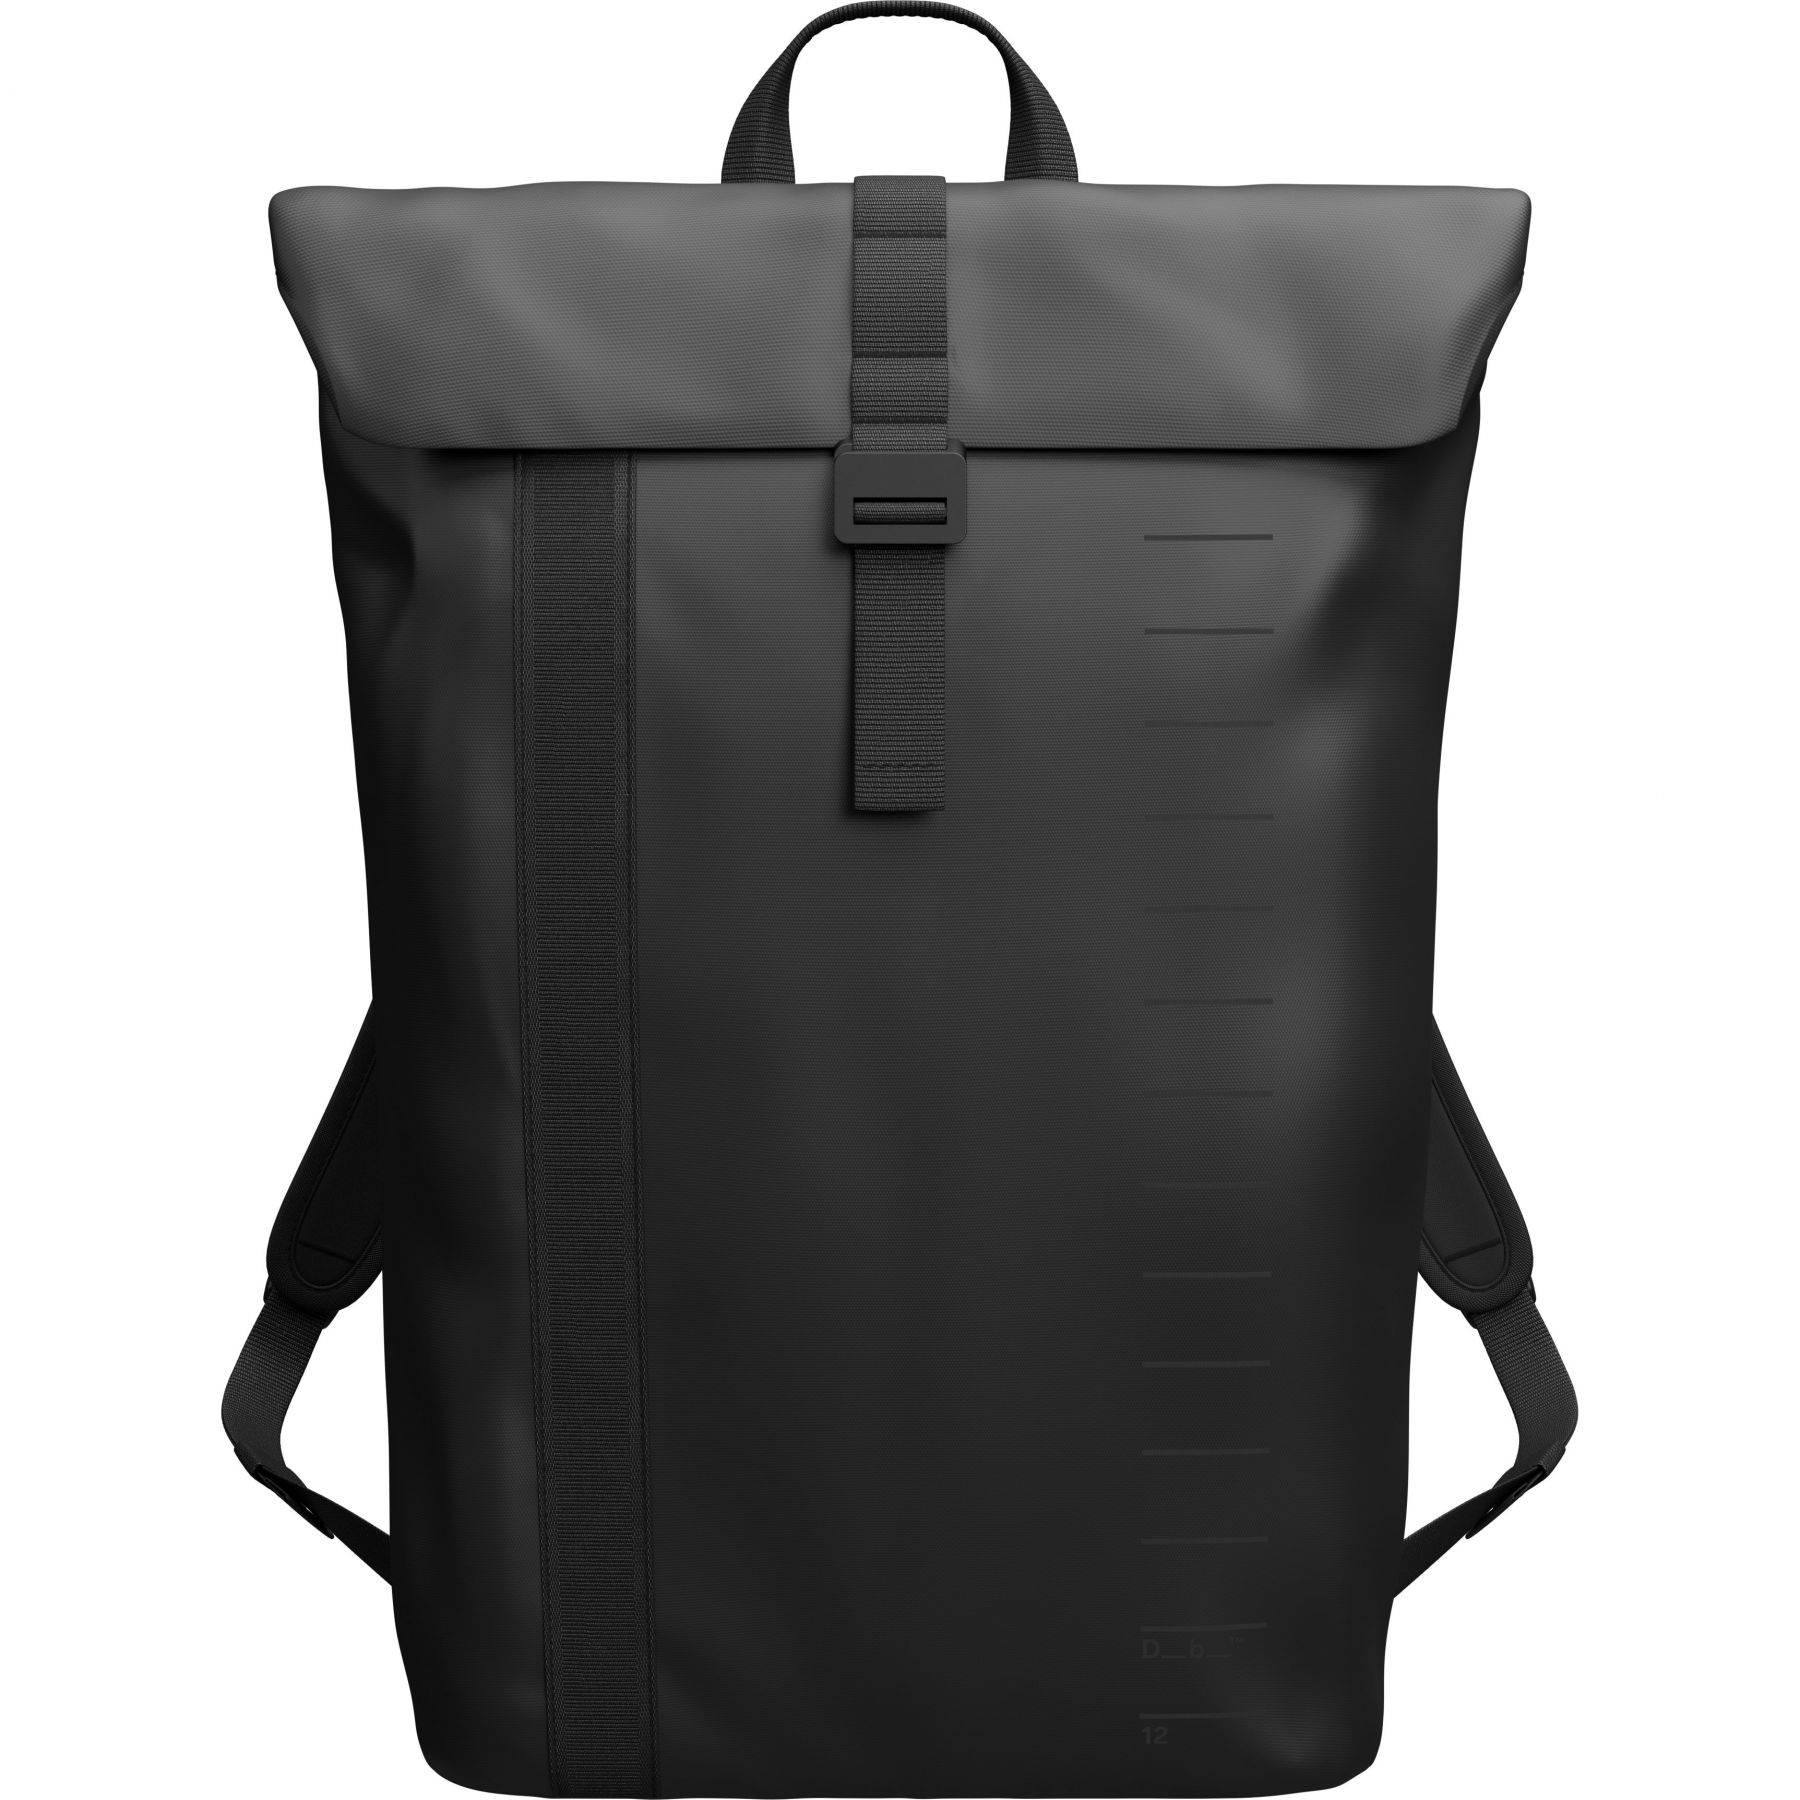 Brug Db Essential Backpack, 12L, black out til en forbedret oplevelse